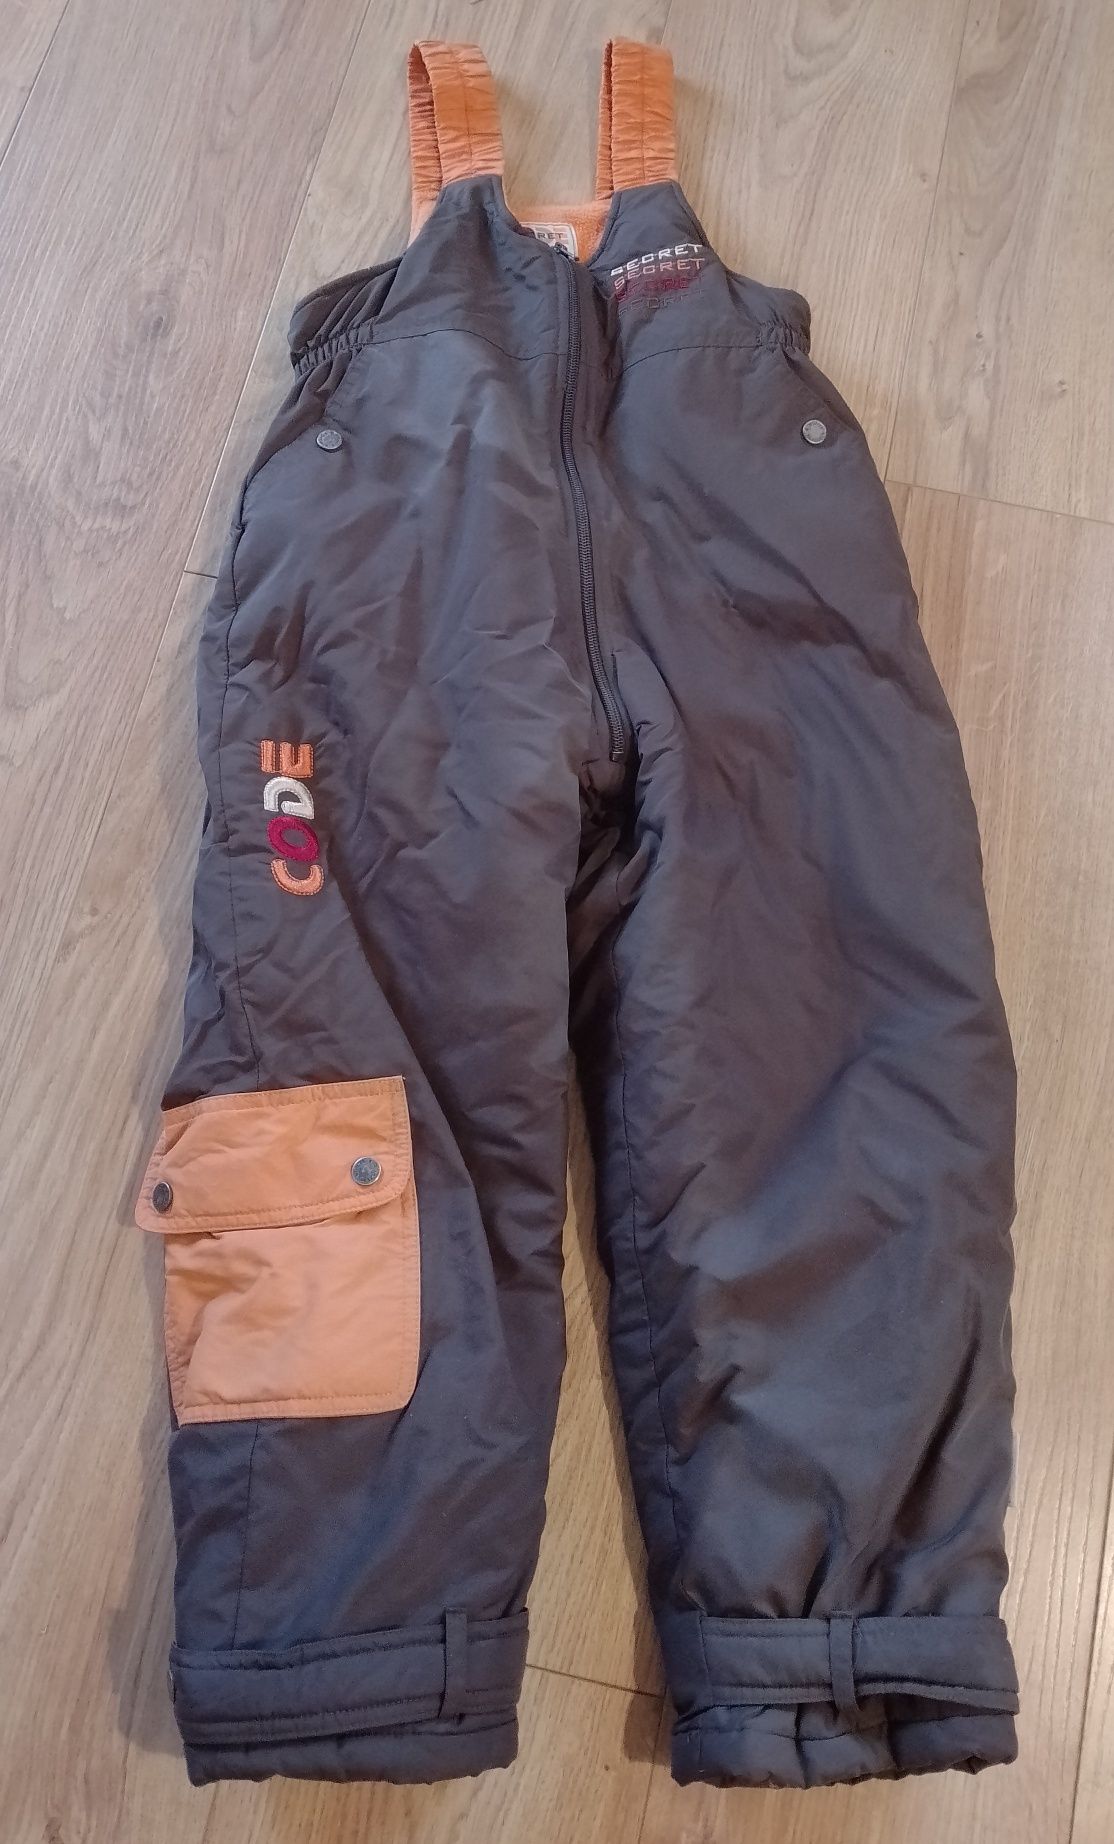 Zima spodnie ocieplane-narciarskie r 122  - Wójcik r. 122 cm